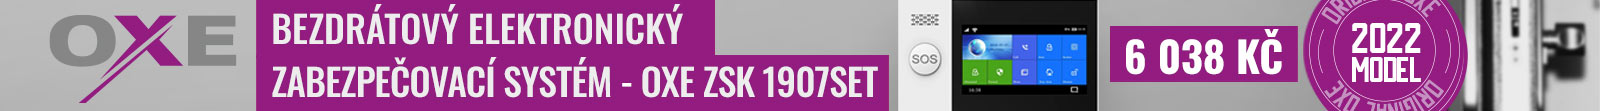 OXE ZSK 1907SET - Bezdrátový elektronický zabezpečovací systém